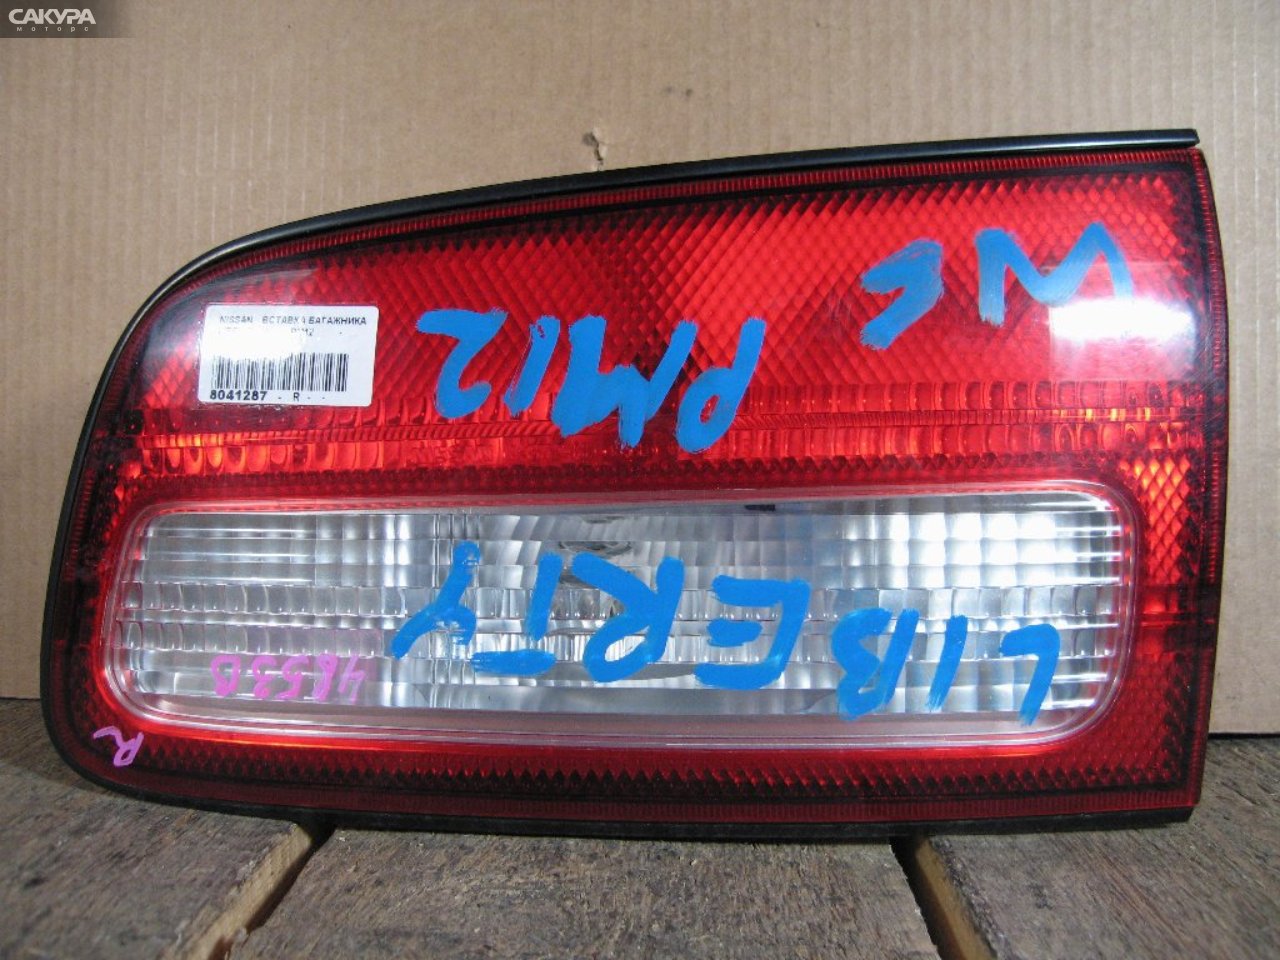 Фонарь вставка багажника правый Nissan Liberty PM12 4853B: купить в Сакура Абакан.